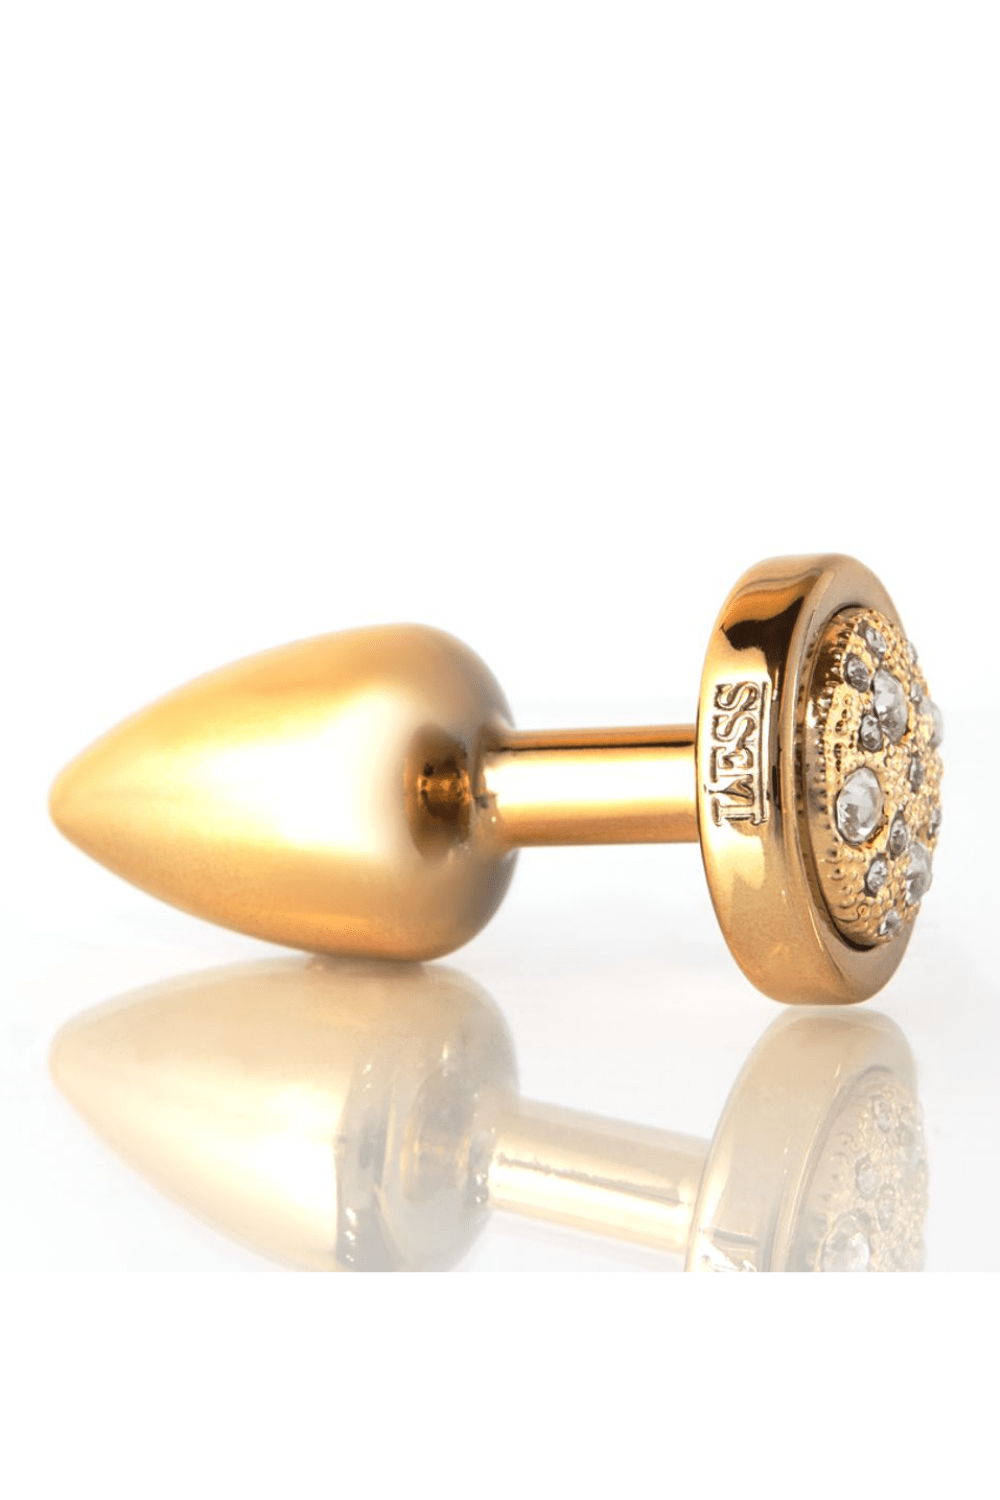 Plug LESS P (ABS) Dourado com Pedra Cravejada Dourada - Tamanho P